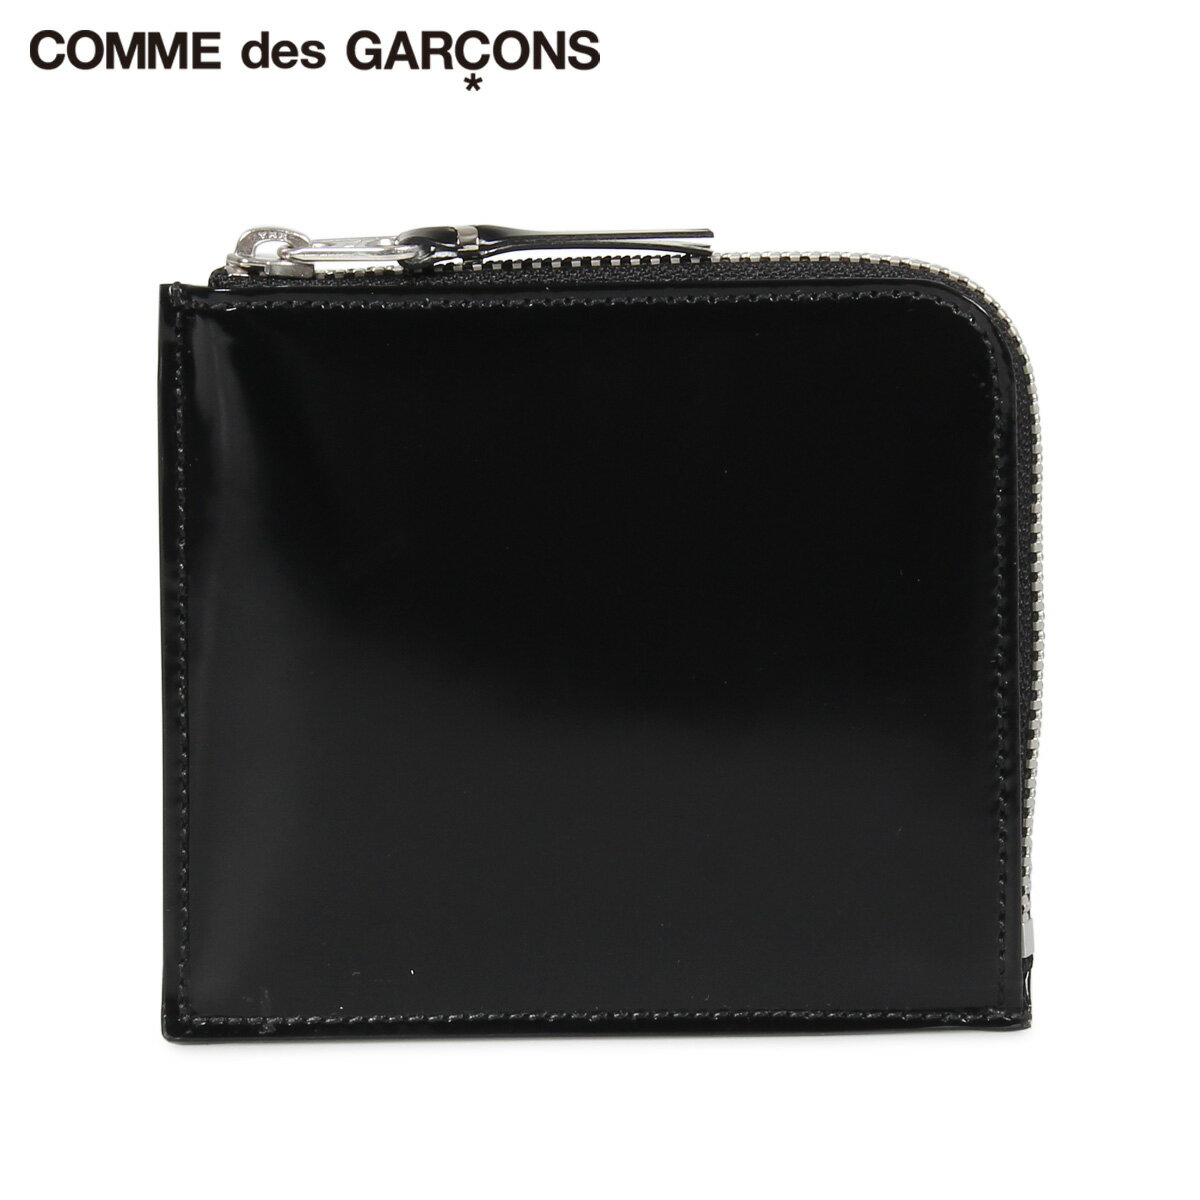 COMME des GARCONS コムデギャルソン 財布 小銭入れ コインケース メンズ レディース L字ファスナー 本革 MIRROR INSIDE COIN CASE ブラック 黒 SA3100MI